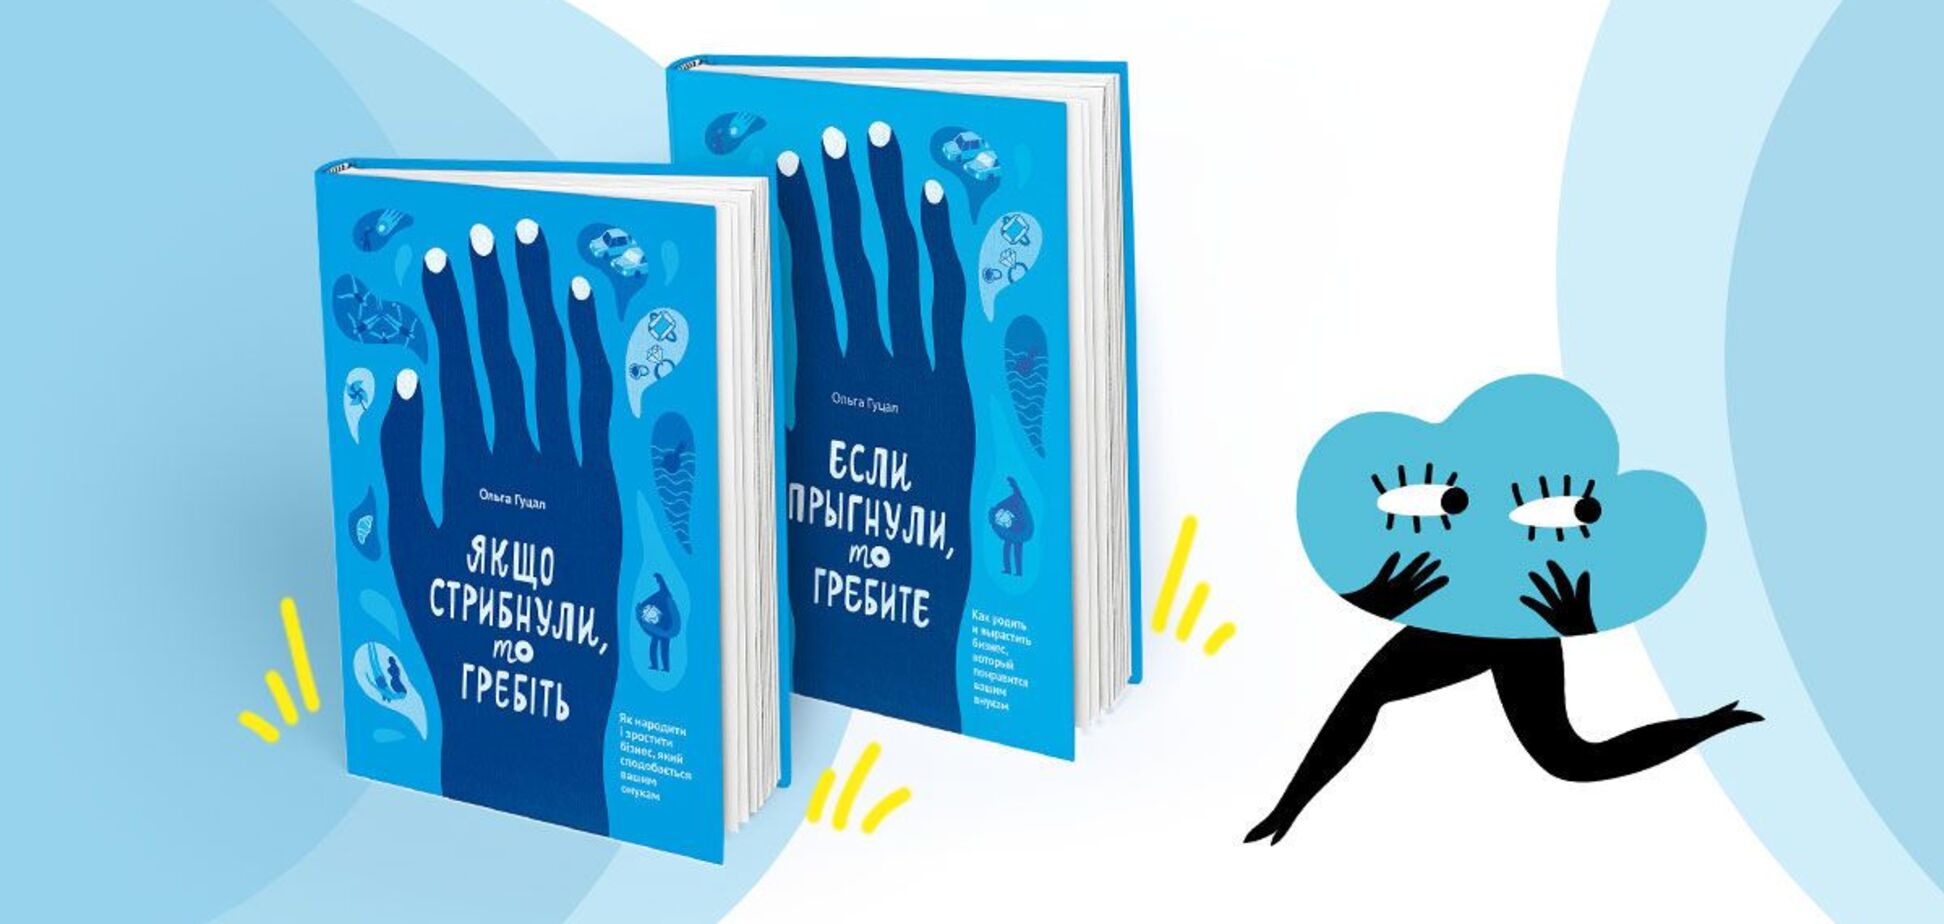 За неделю продано более 1000 экземпляров книги Ольги Гуцал 'Если прыгнули, то гребите'